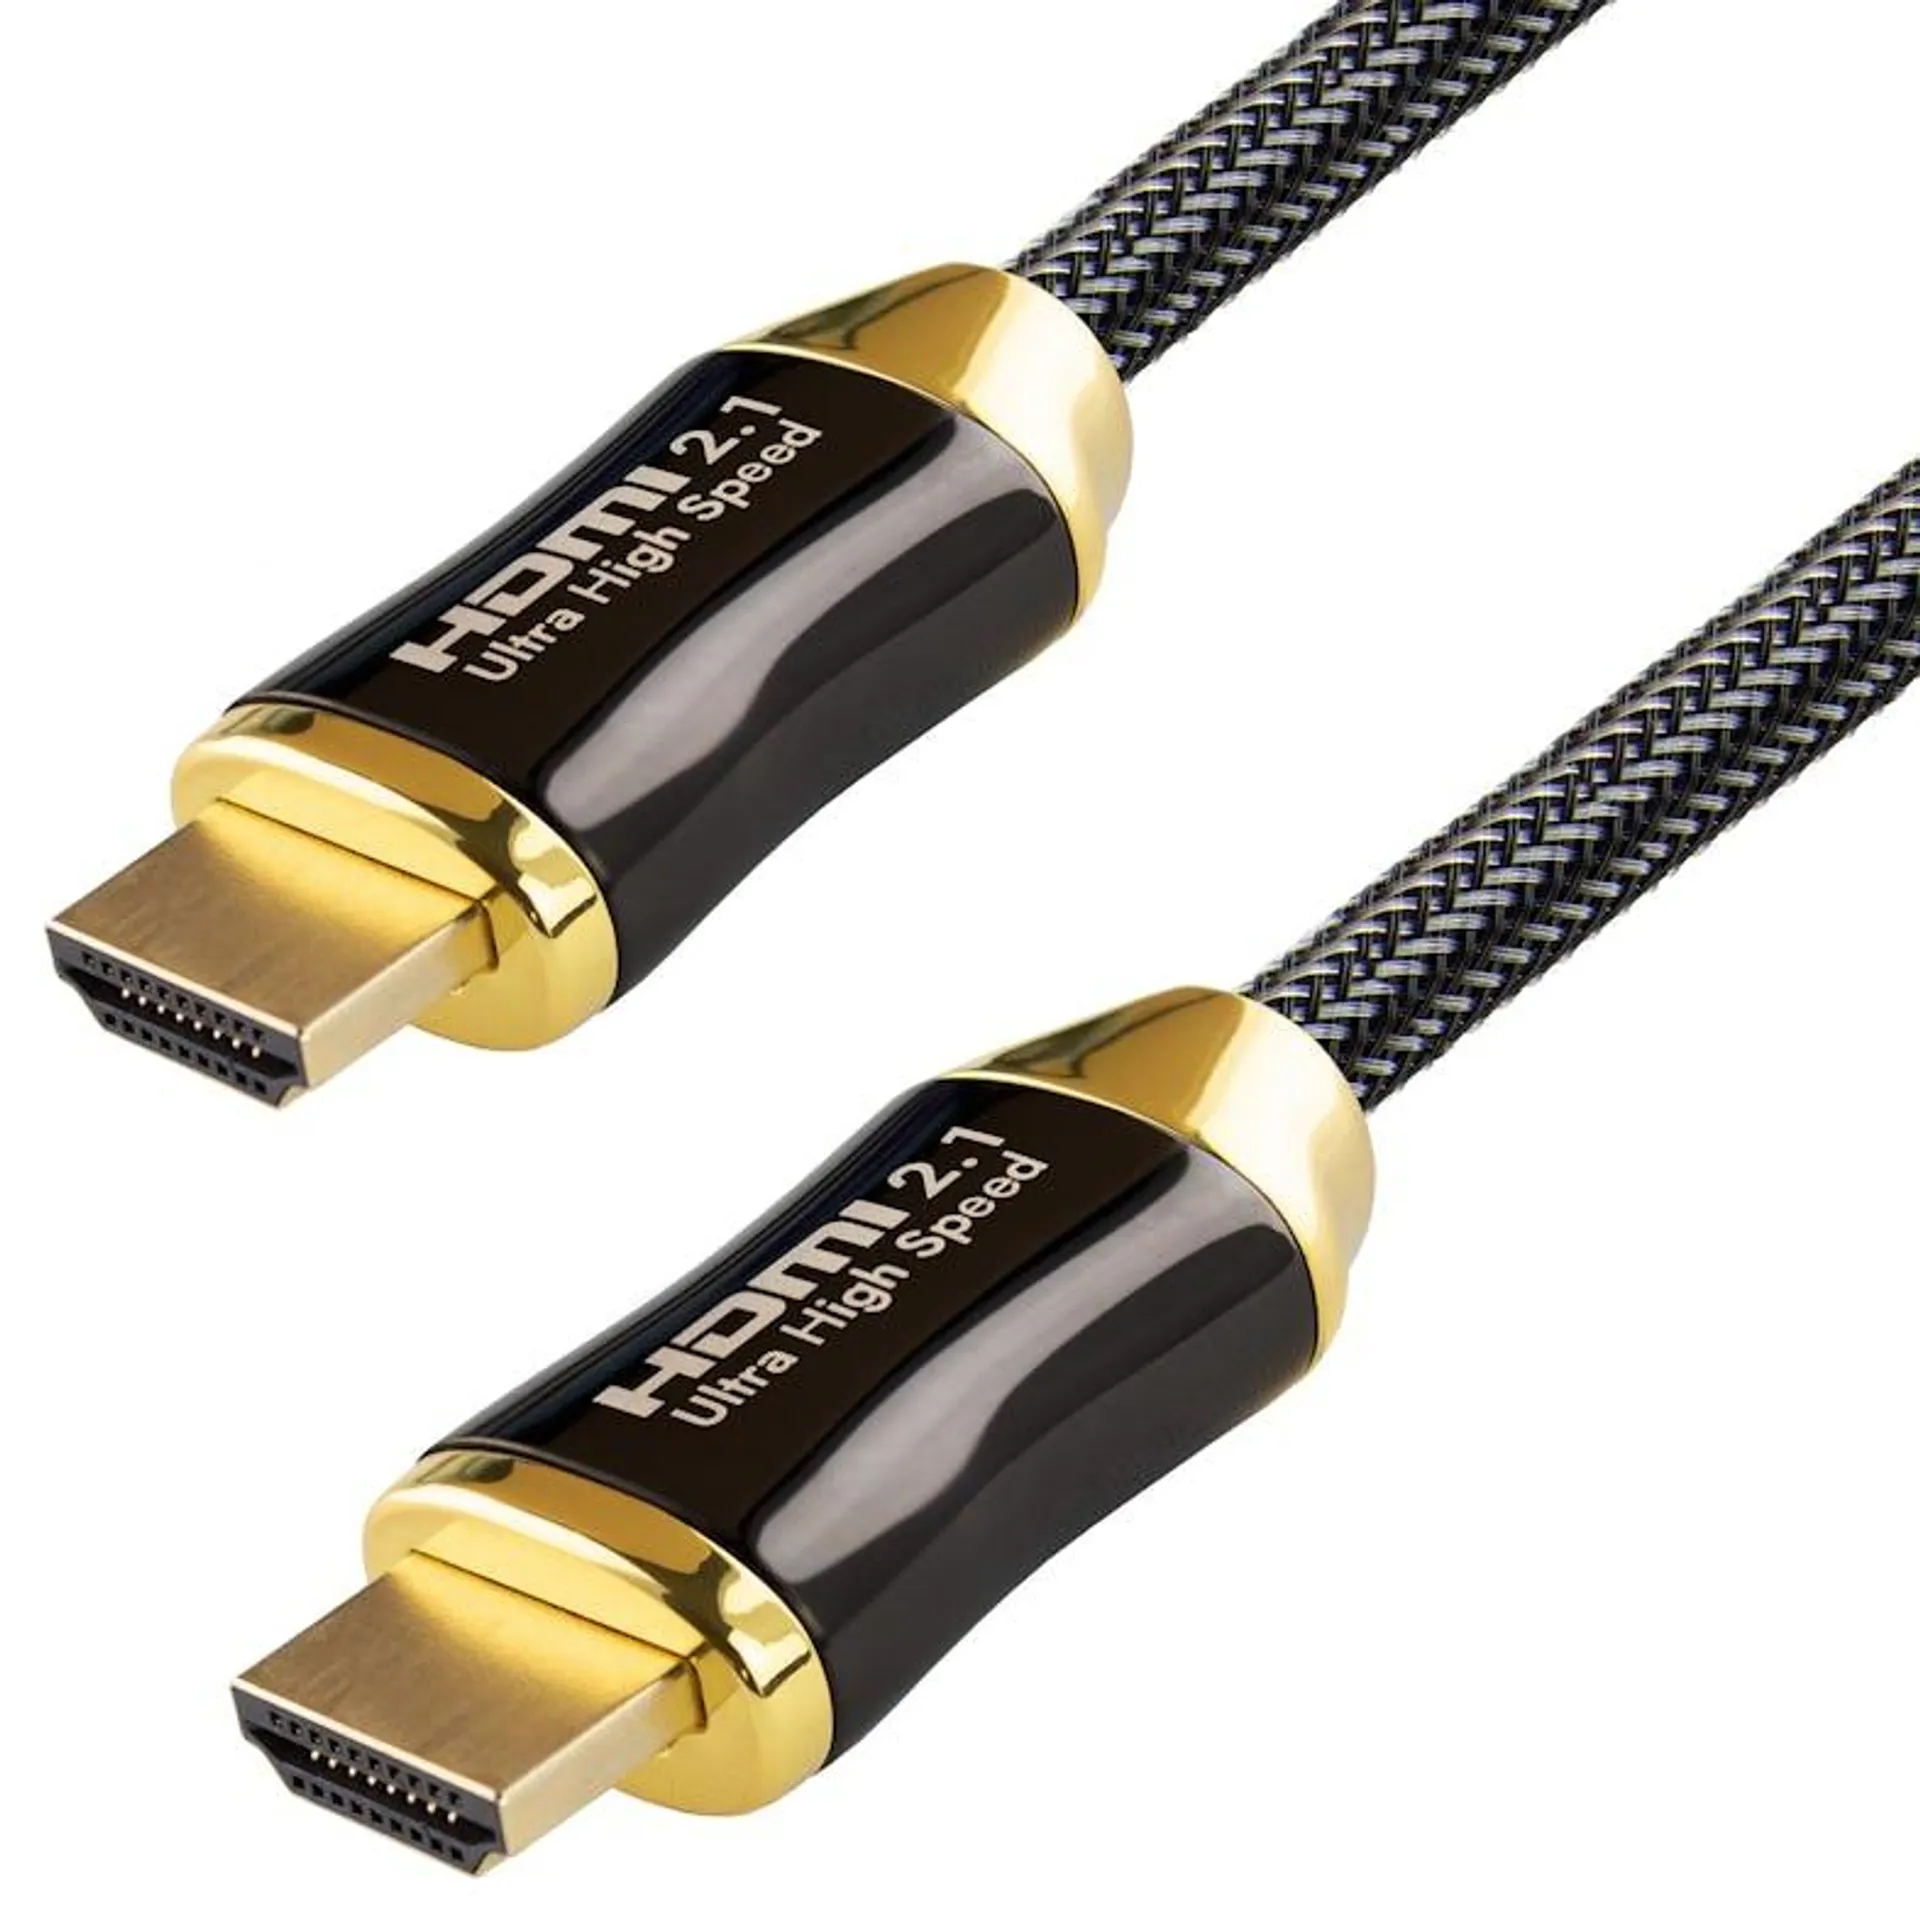 Qnected® HDMI 2.1 kabel 5 meter - Gecertificeerd - 4K 120Hz & 144Hz, 8K 60Hz Ultra HD - Charcoal Black